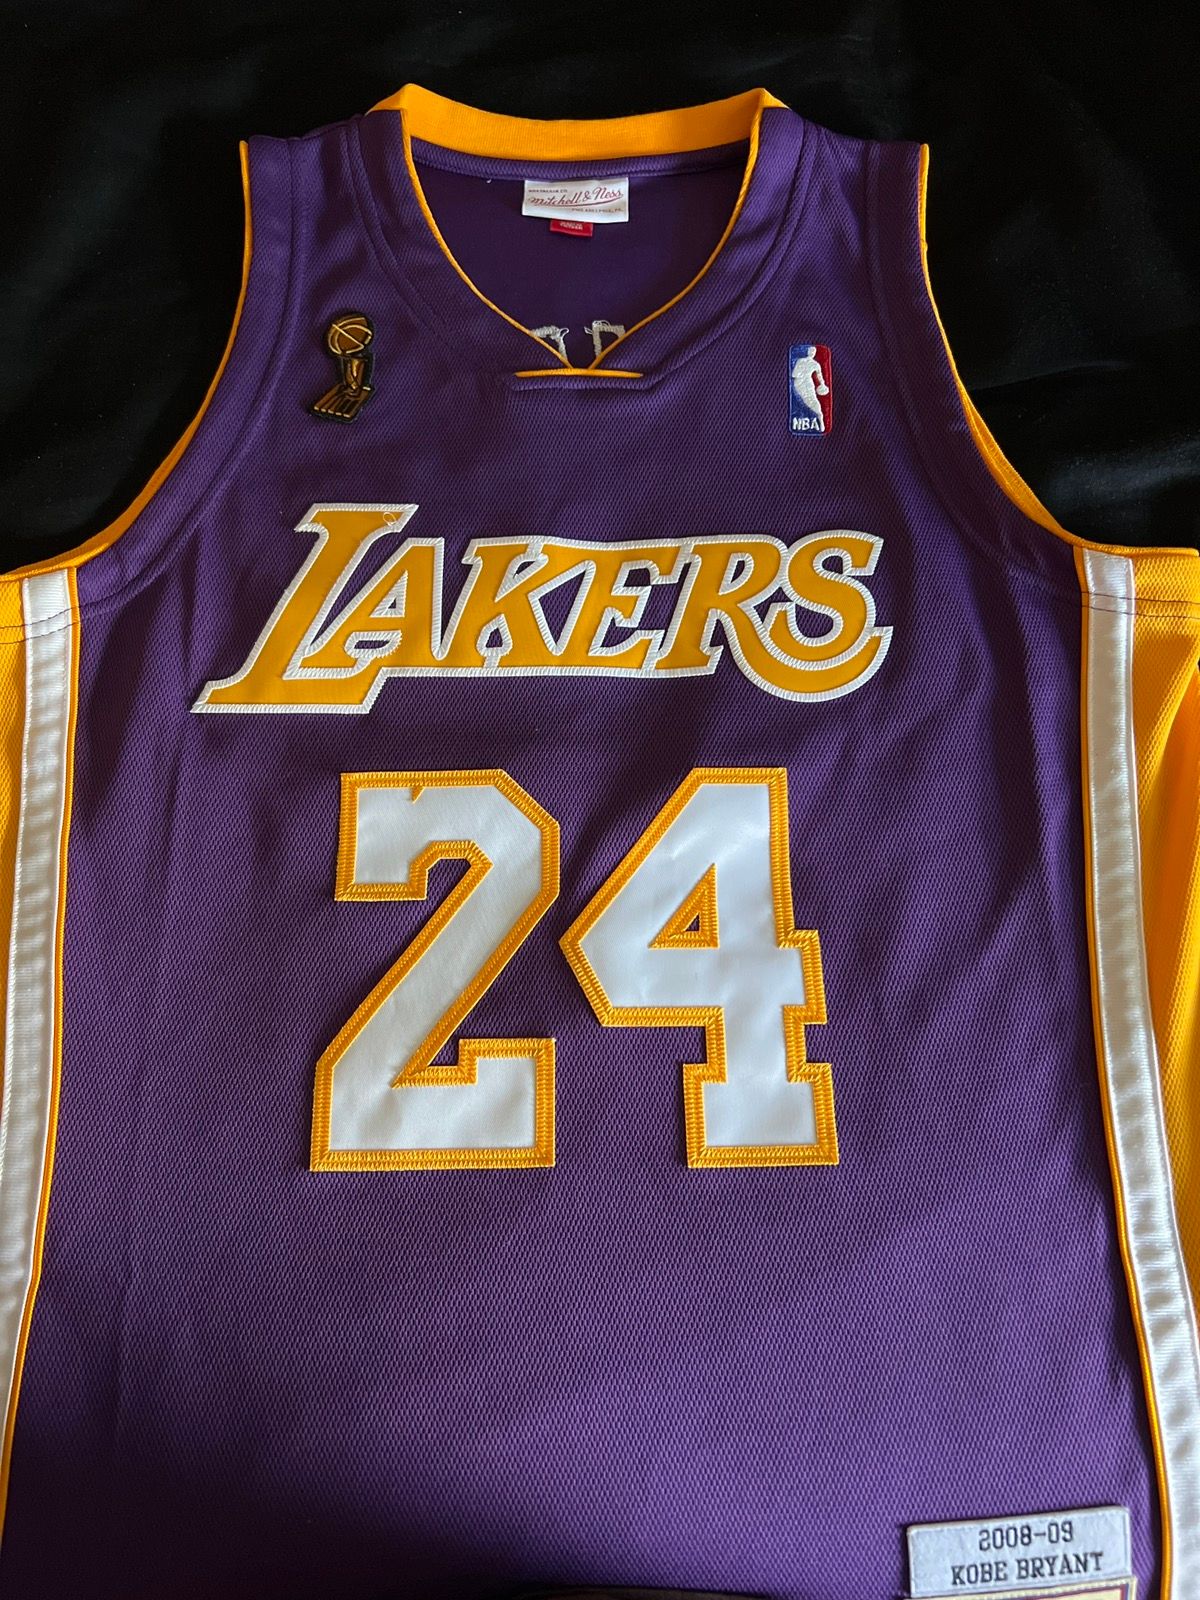 NBA Lakers Kobe Bryant 08-09 Size US M / EU 48-50 / 2 - 1 Preview